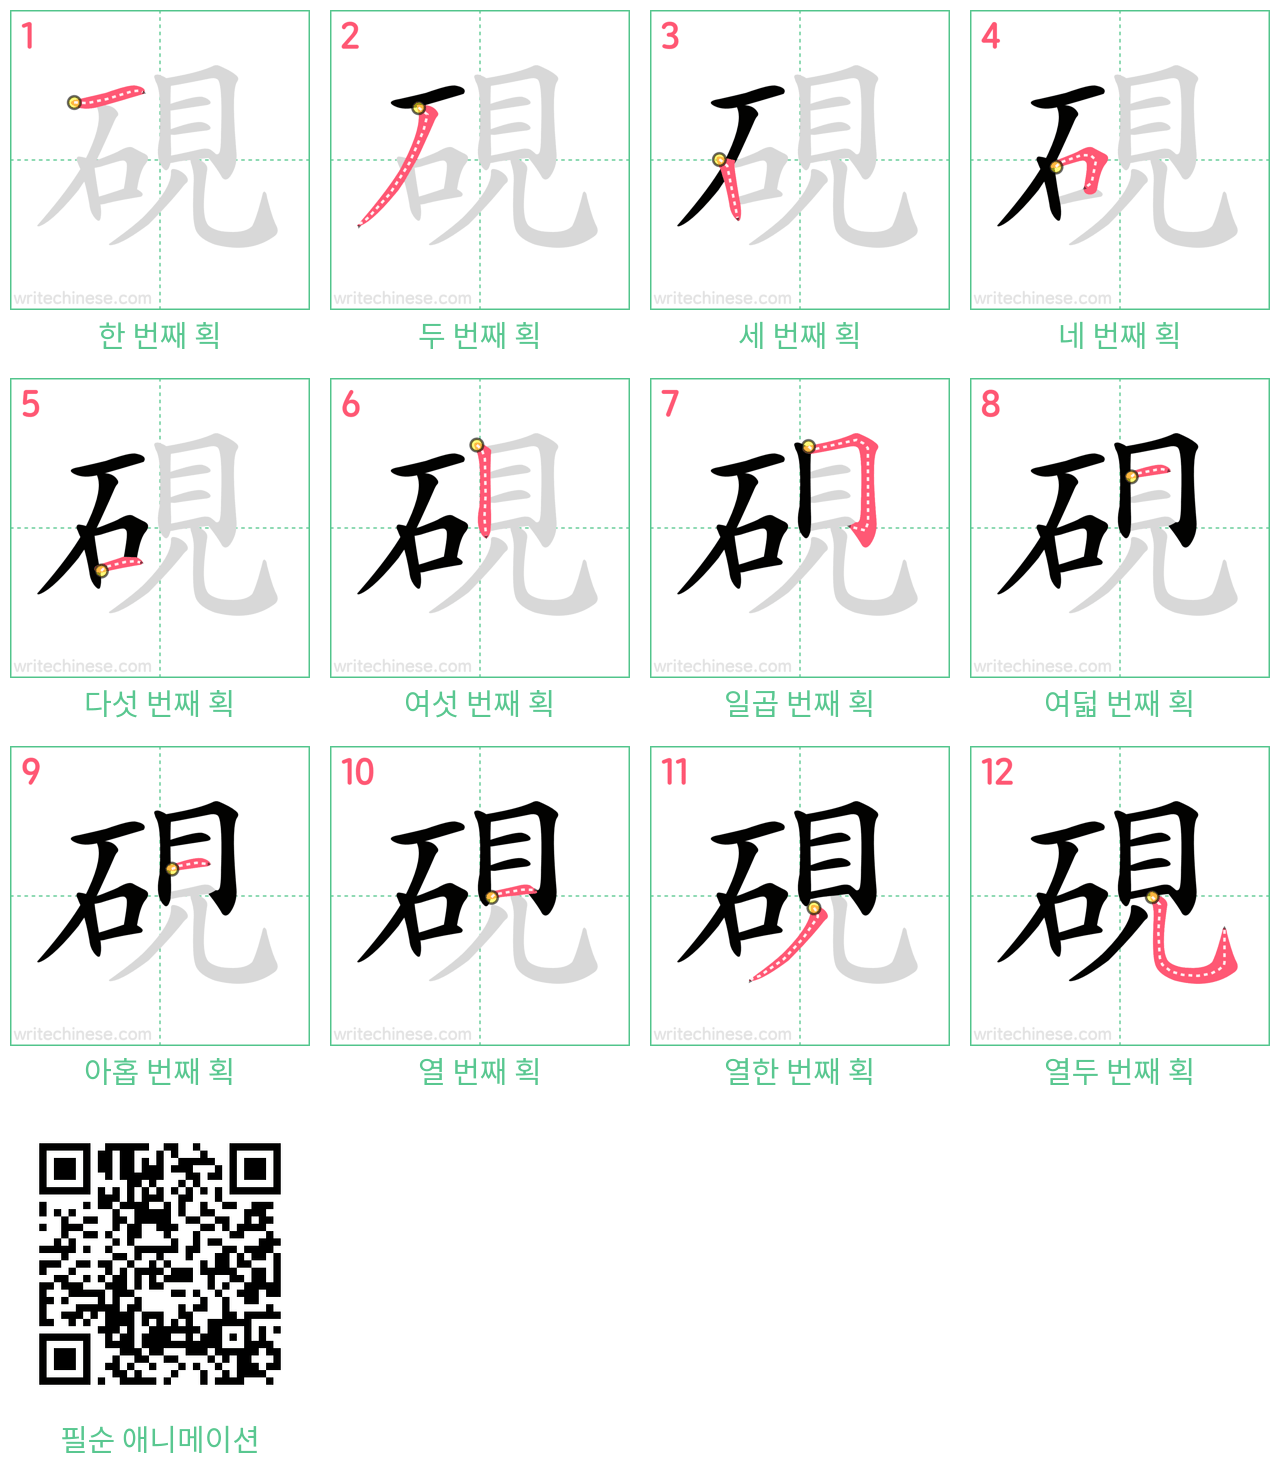 硯 step-by-step stroke order diagrams